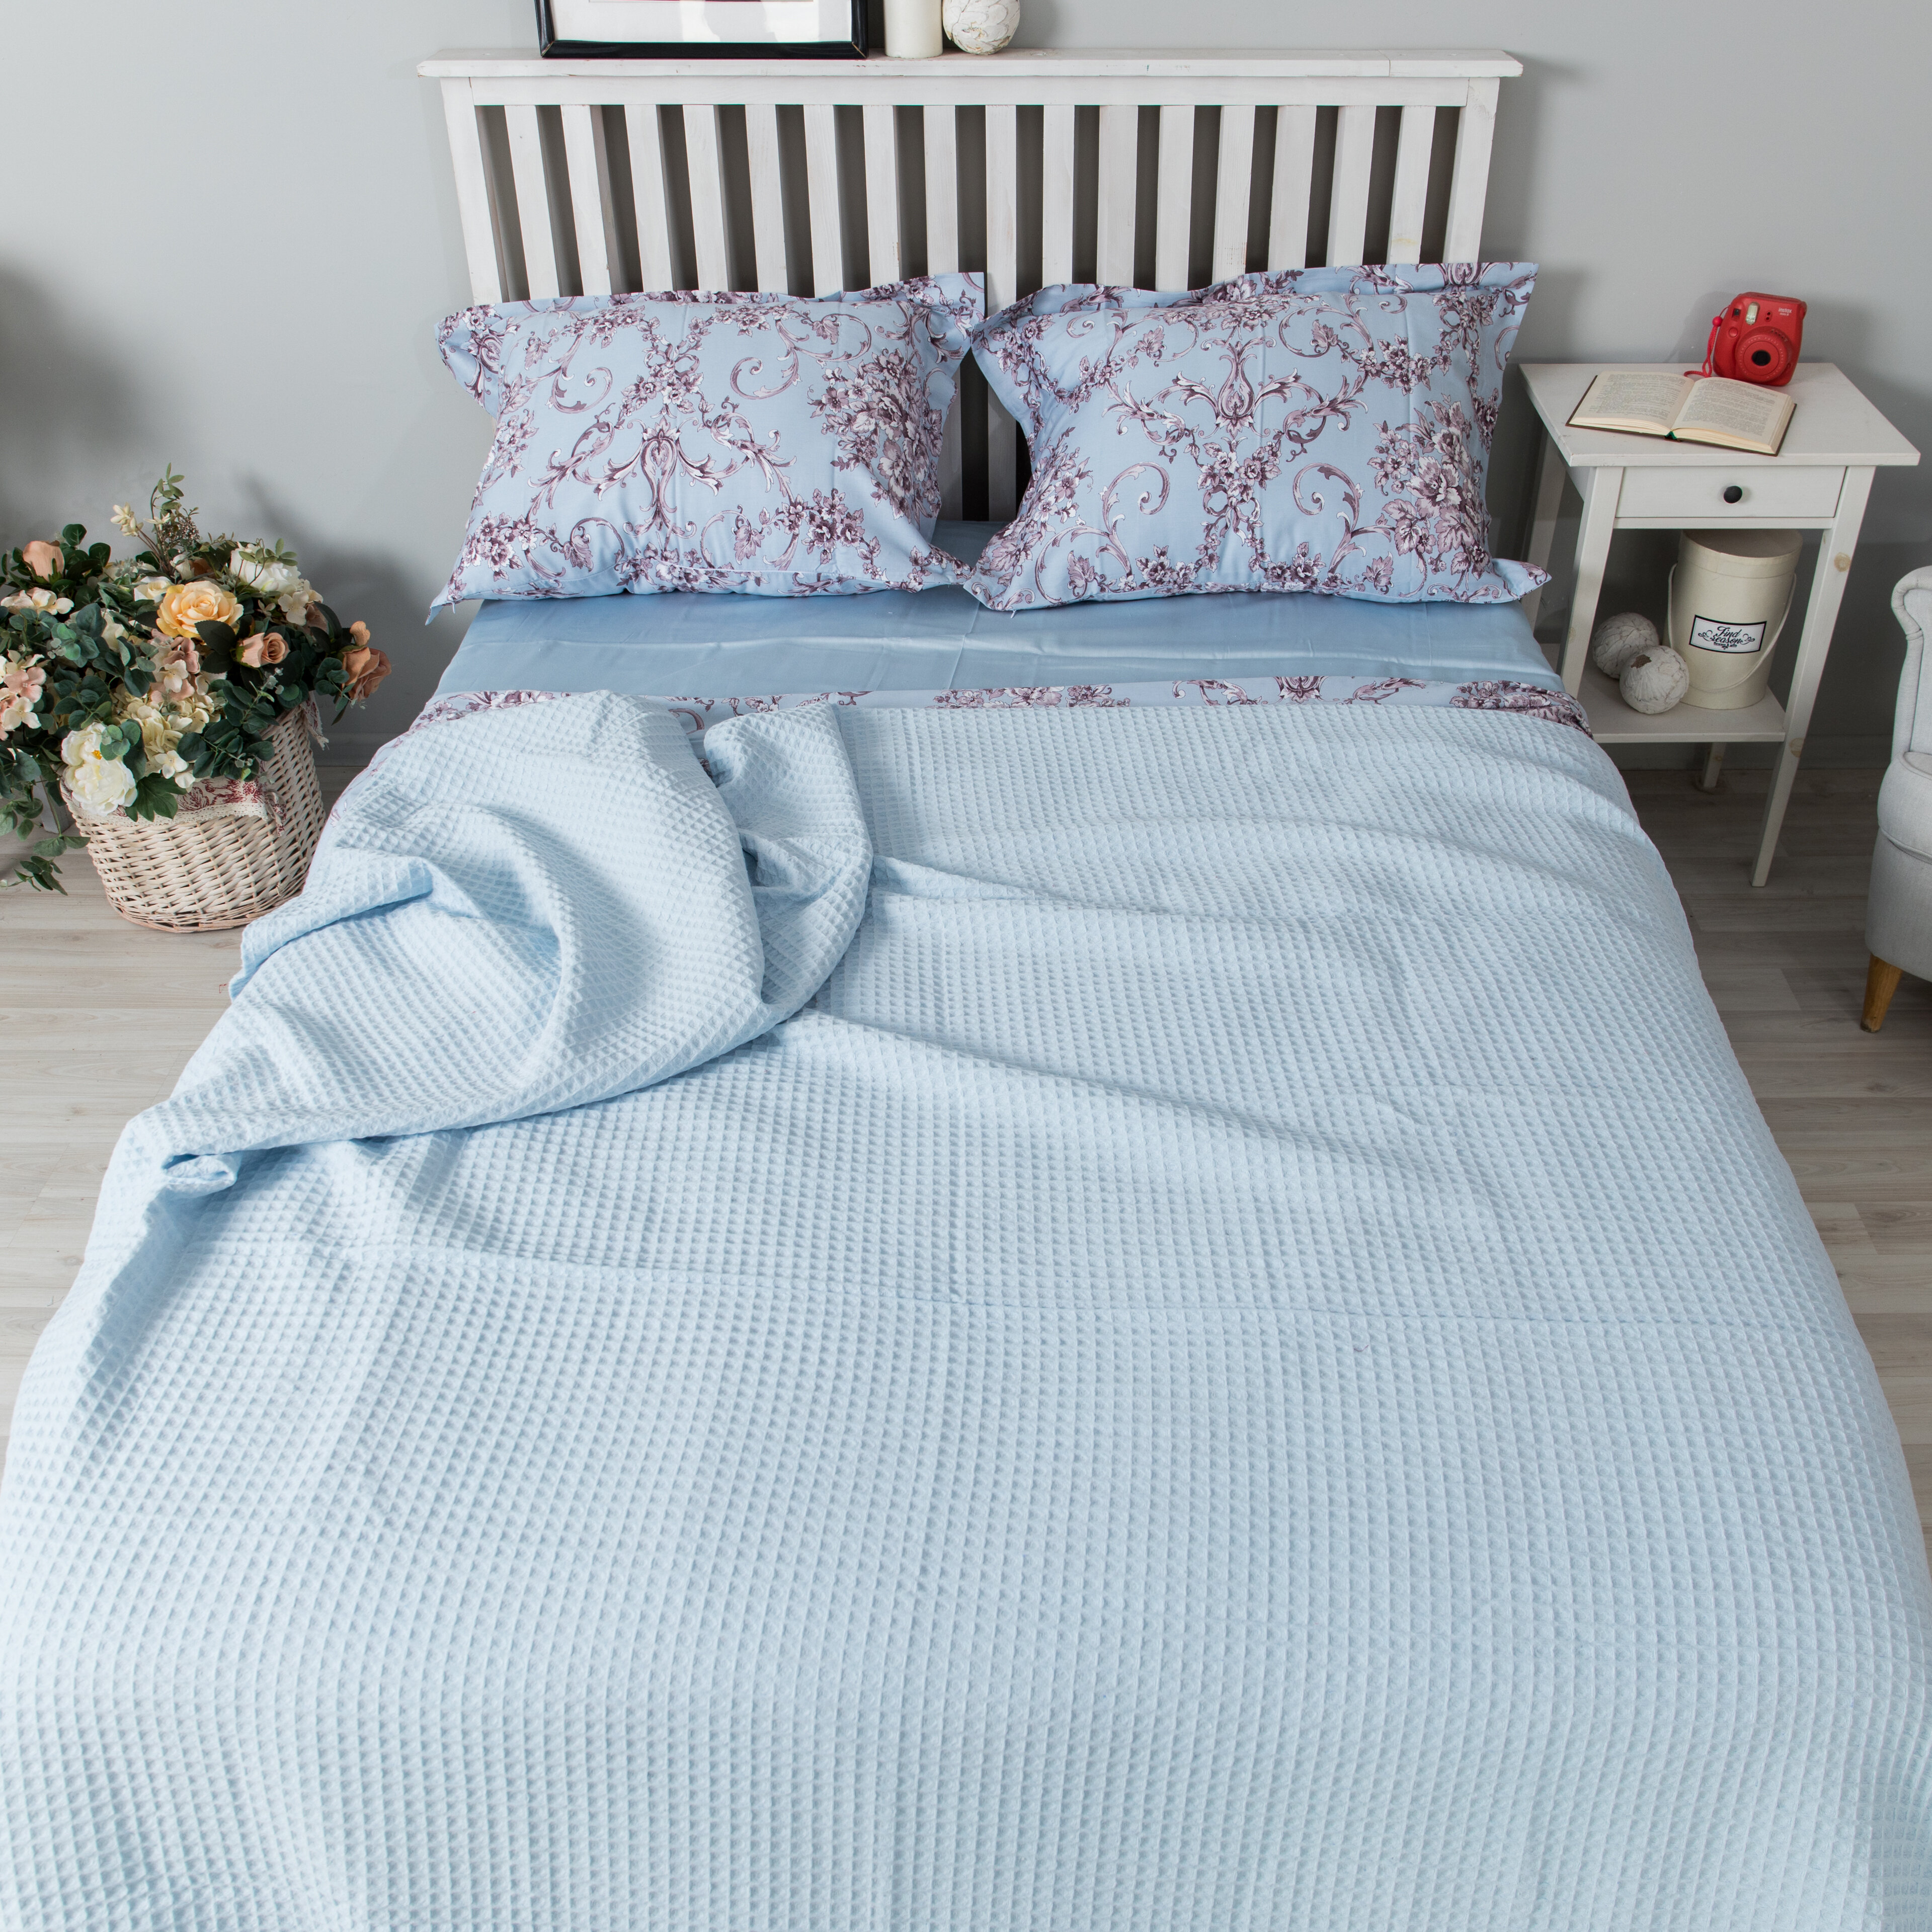 Плед вафельный oops_postel, покрывало для спальни, 100% хлопок, размер 220 см х 230 см, цвет: голубой, греческое плетение - фотография № 1